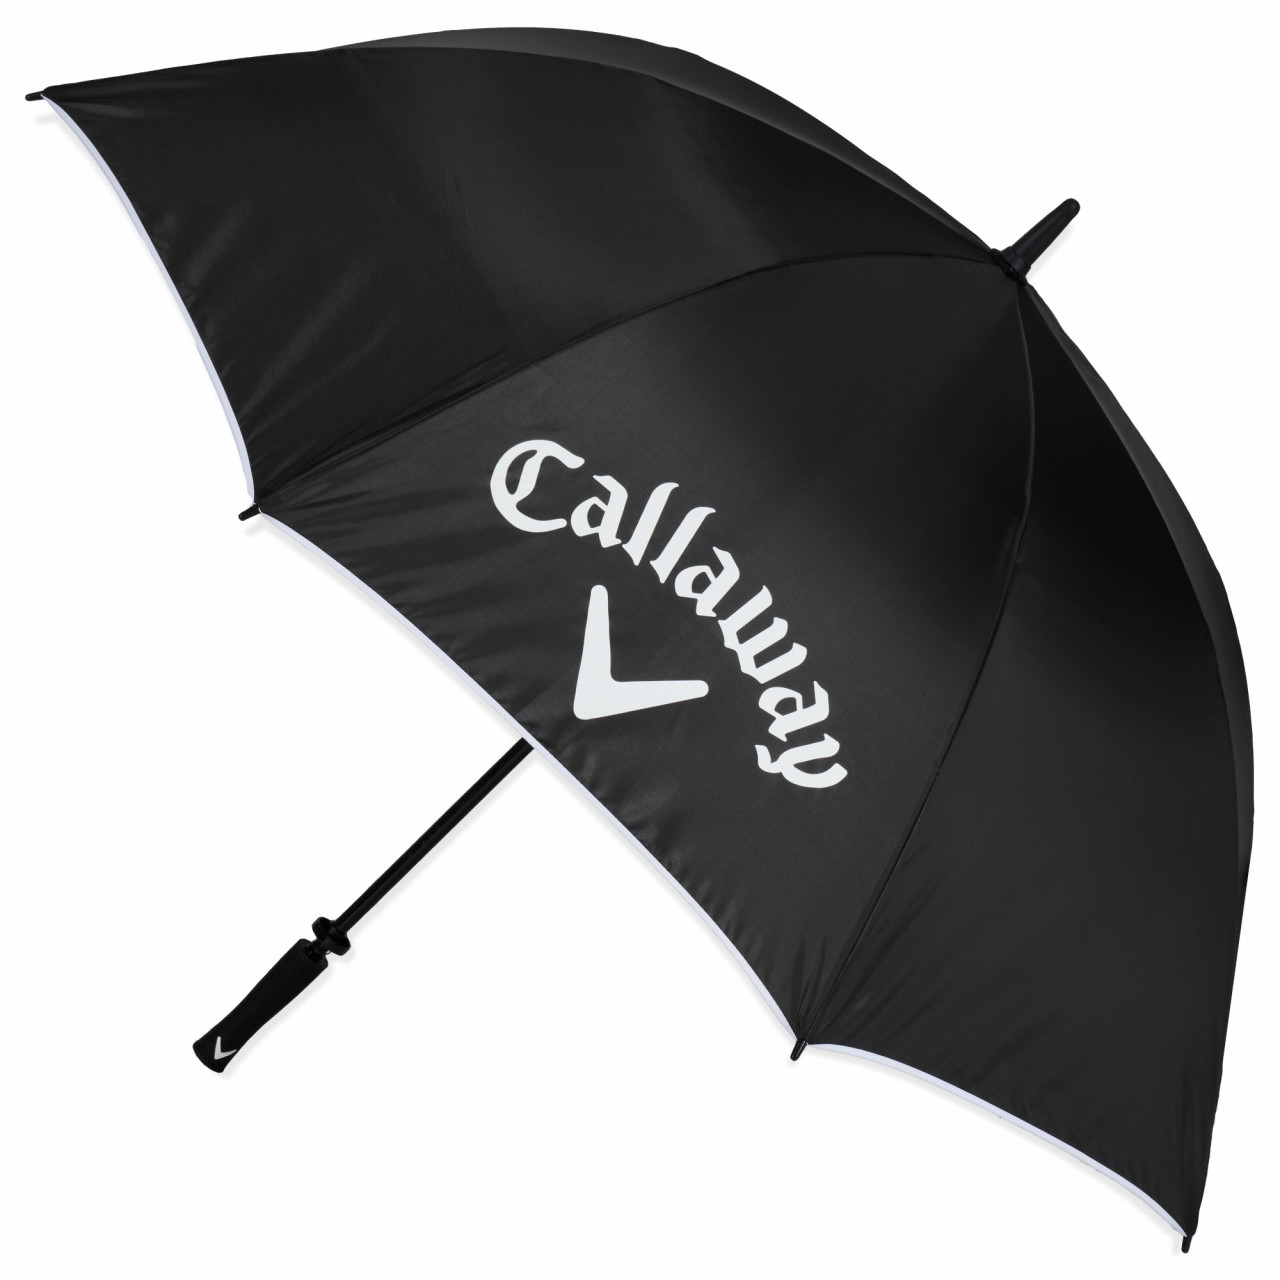 Callaway 60 inch Single Canopy Golf Regenschirm / Sonnenschirm